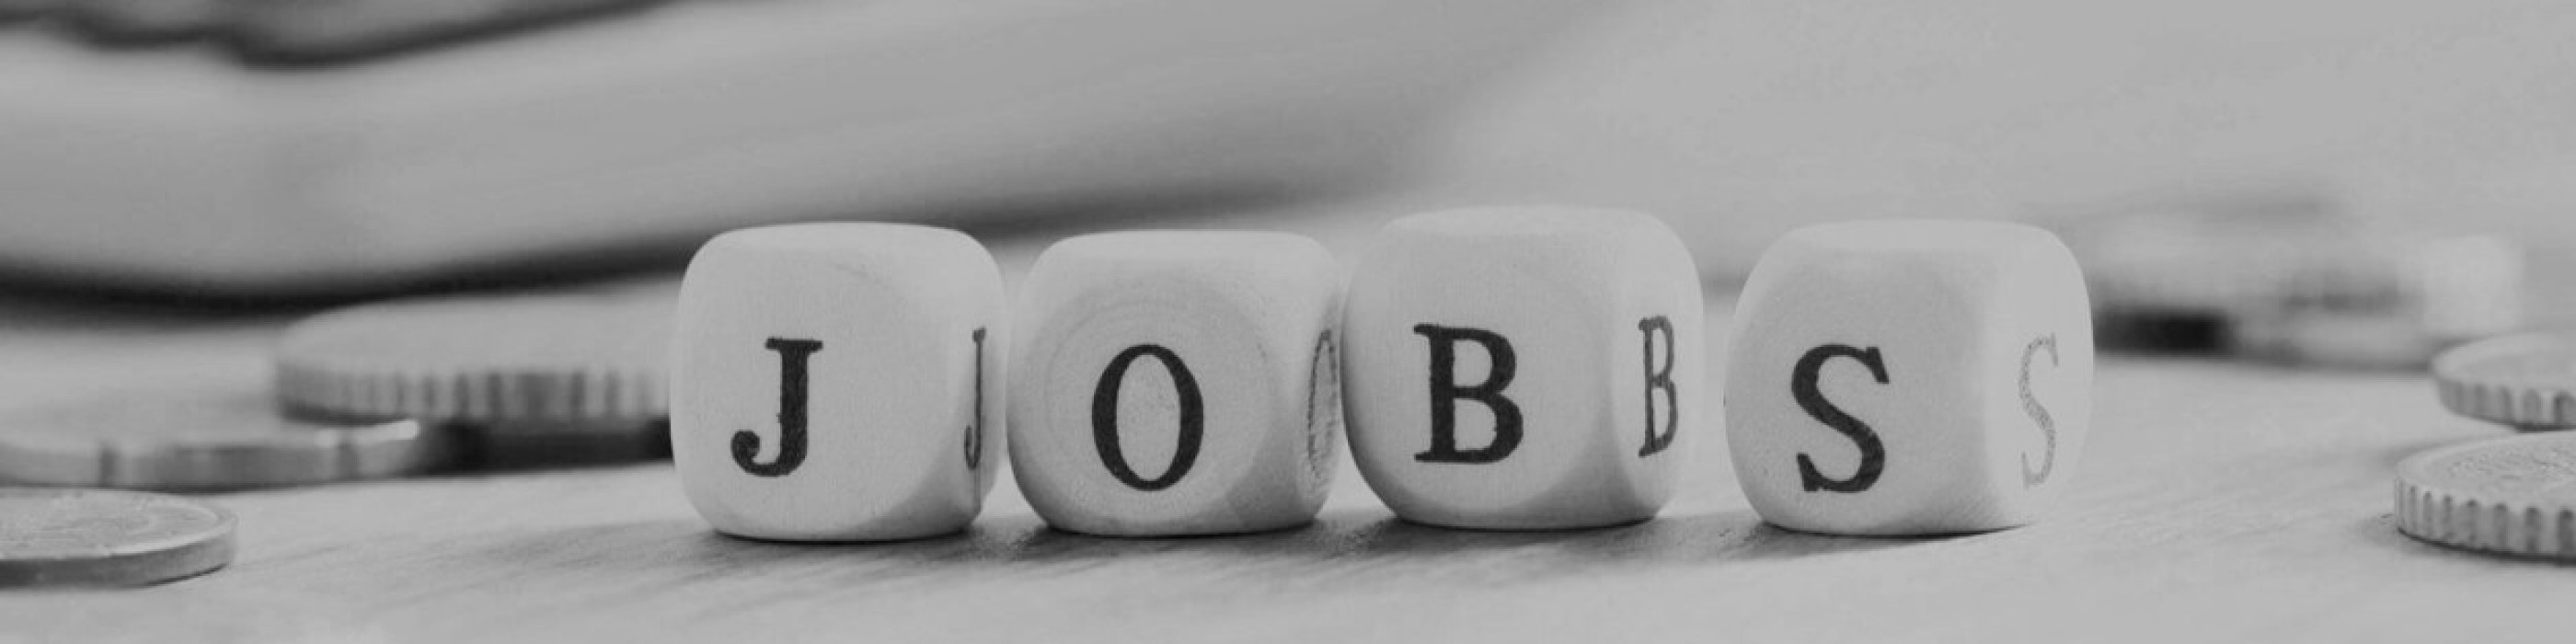 Jobs & Karriere